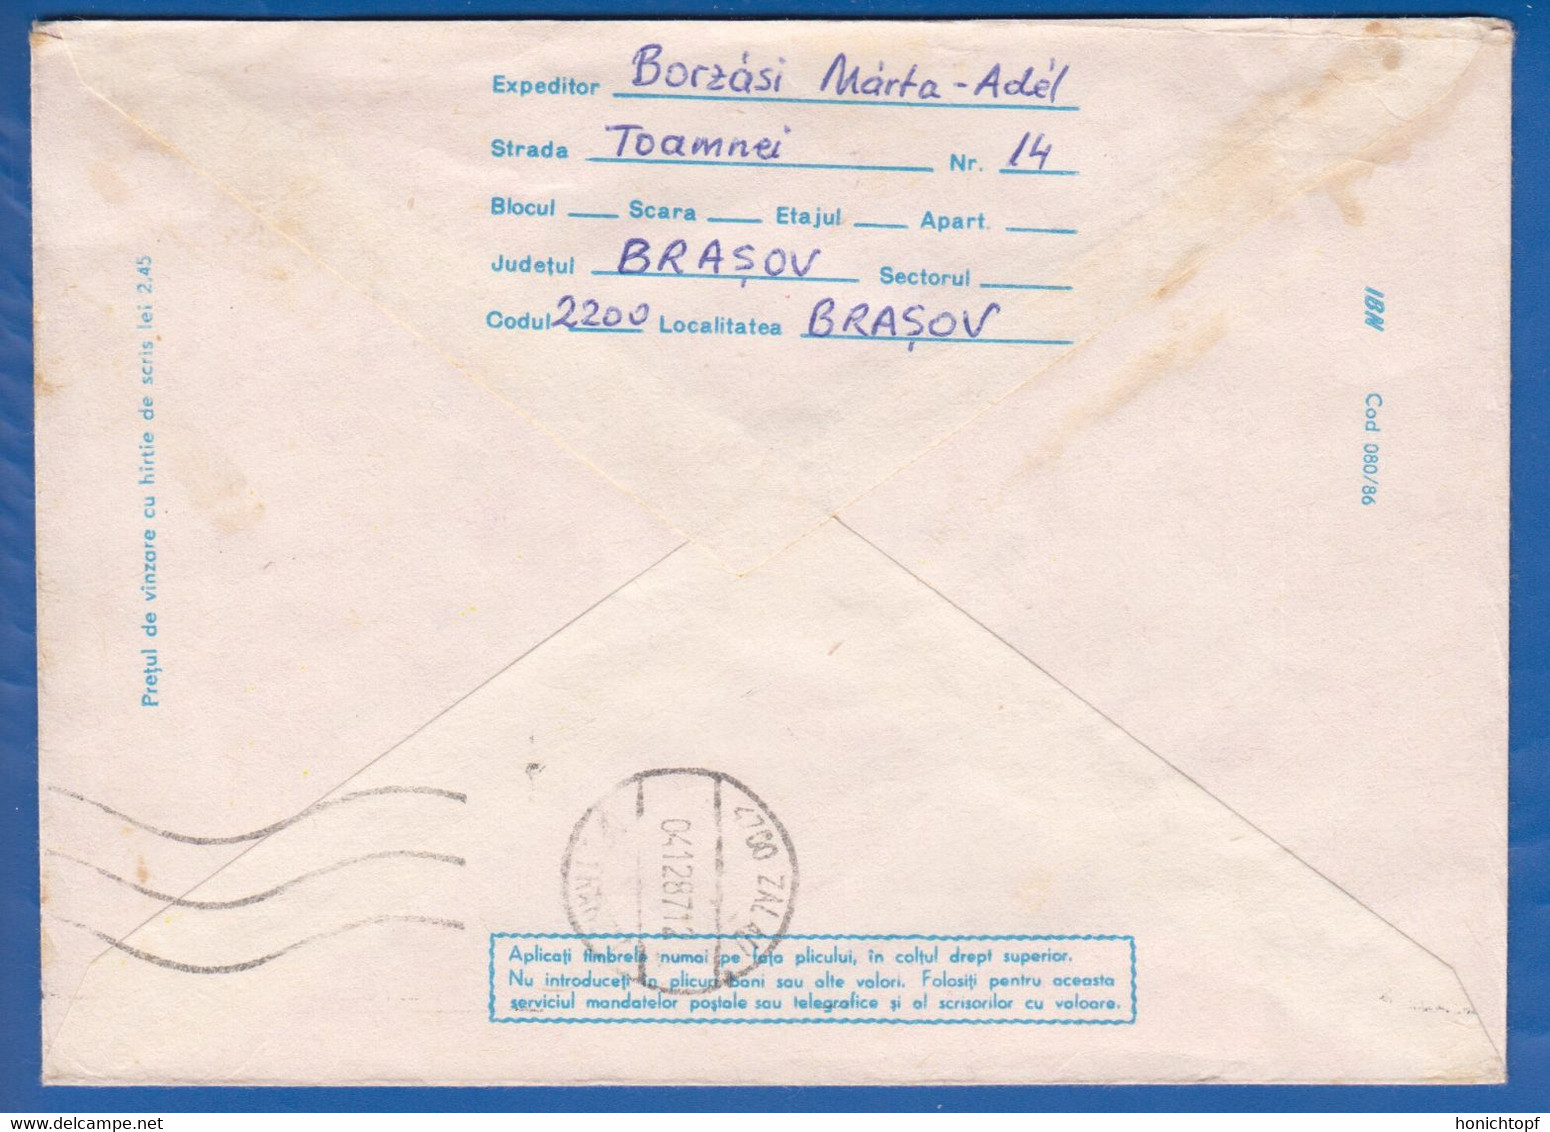 Rumänien; Brief Fussball Mexiko 86; Einschreiben; Registered Mail; Fotbal; 1987 Brasov - 1986 – Mexique